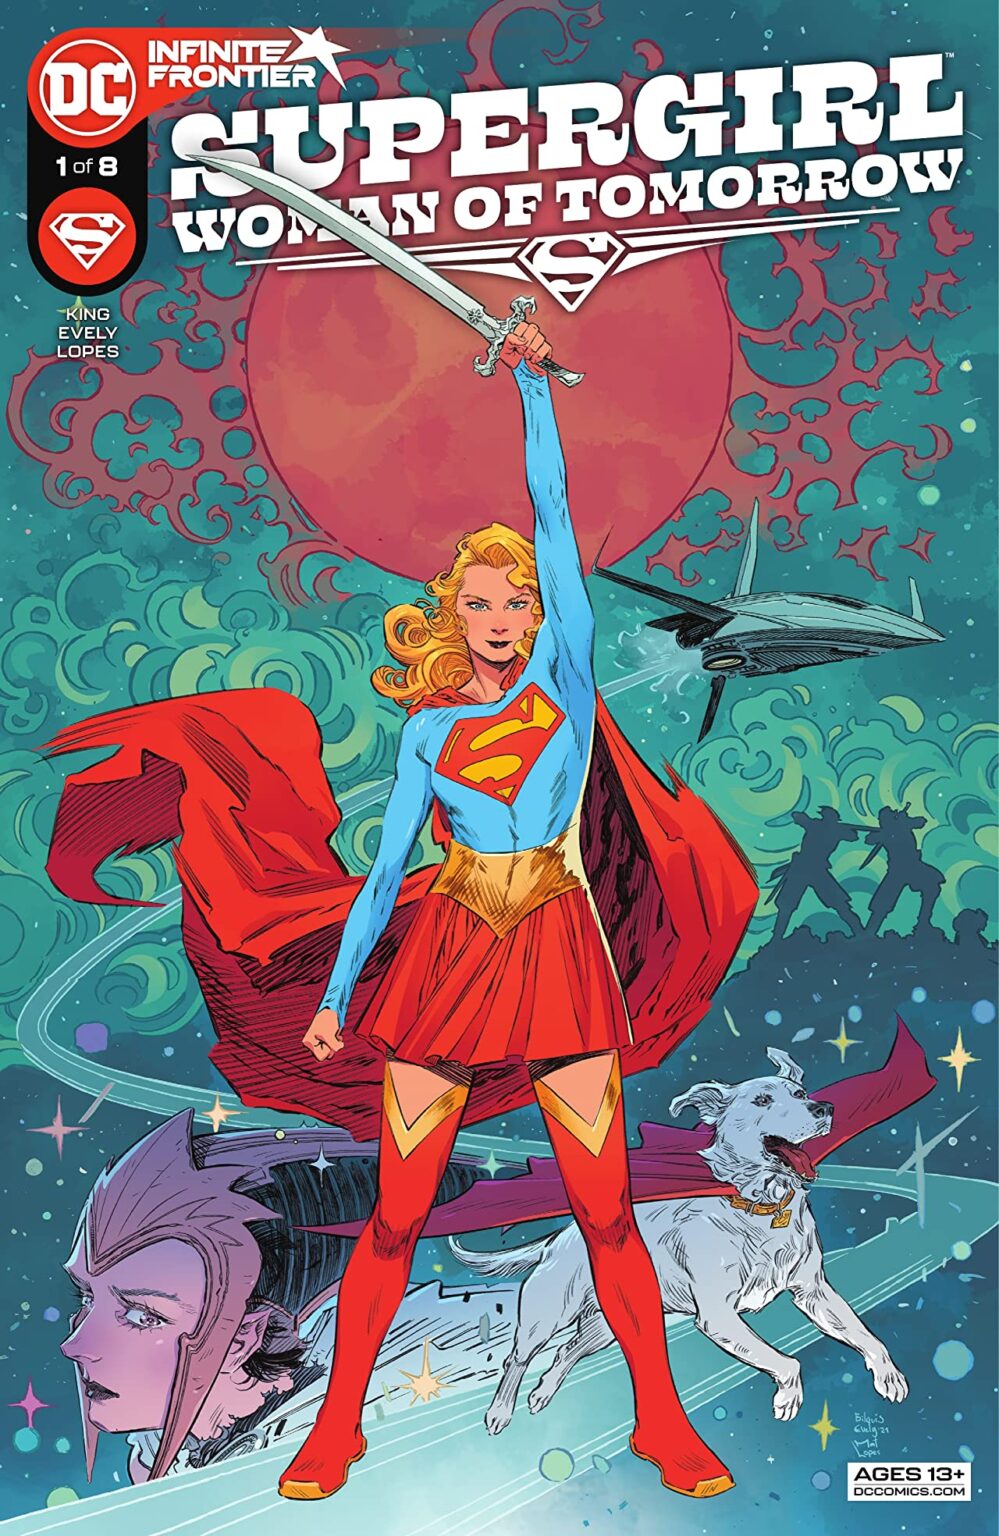 51 - Les comics que vous lisez en ce moment - Page 19 Supergirl-999x1536